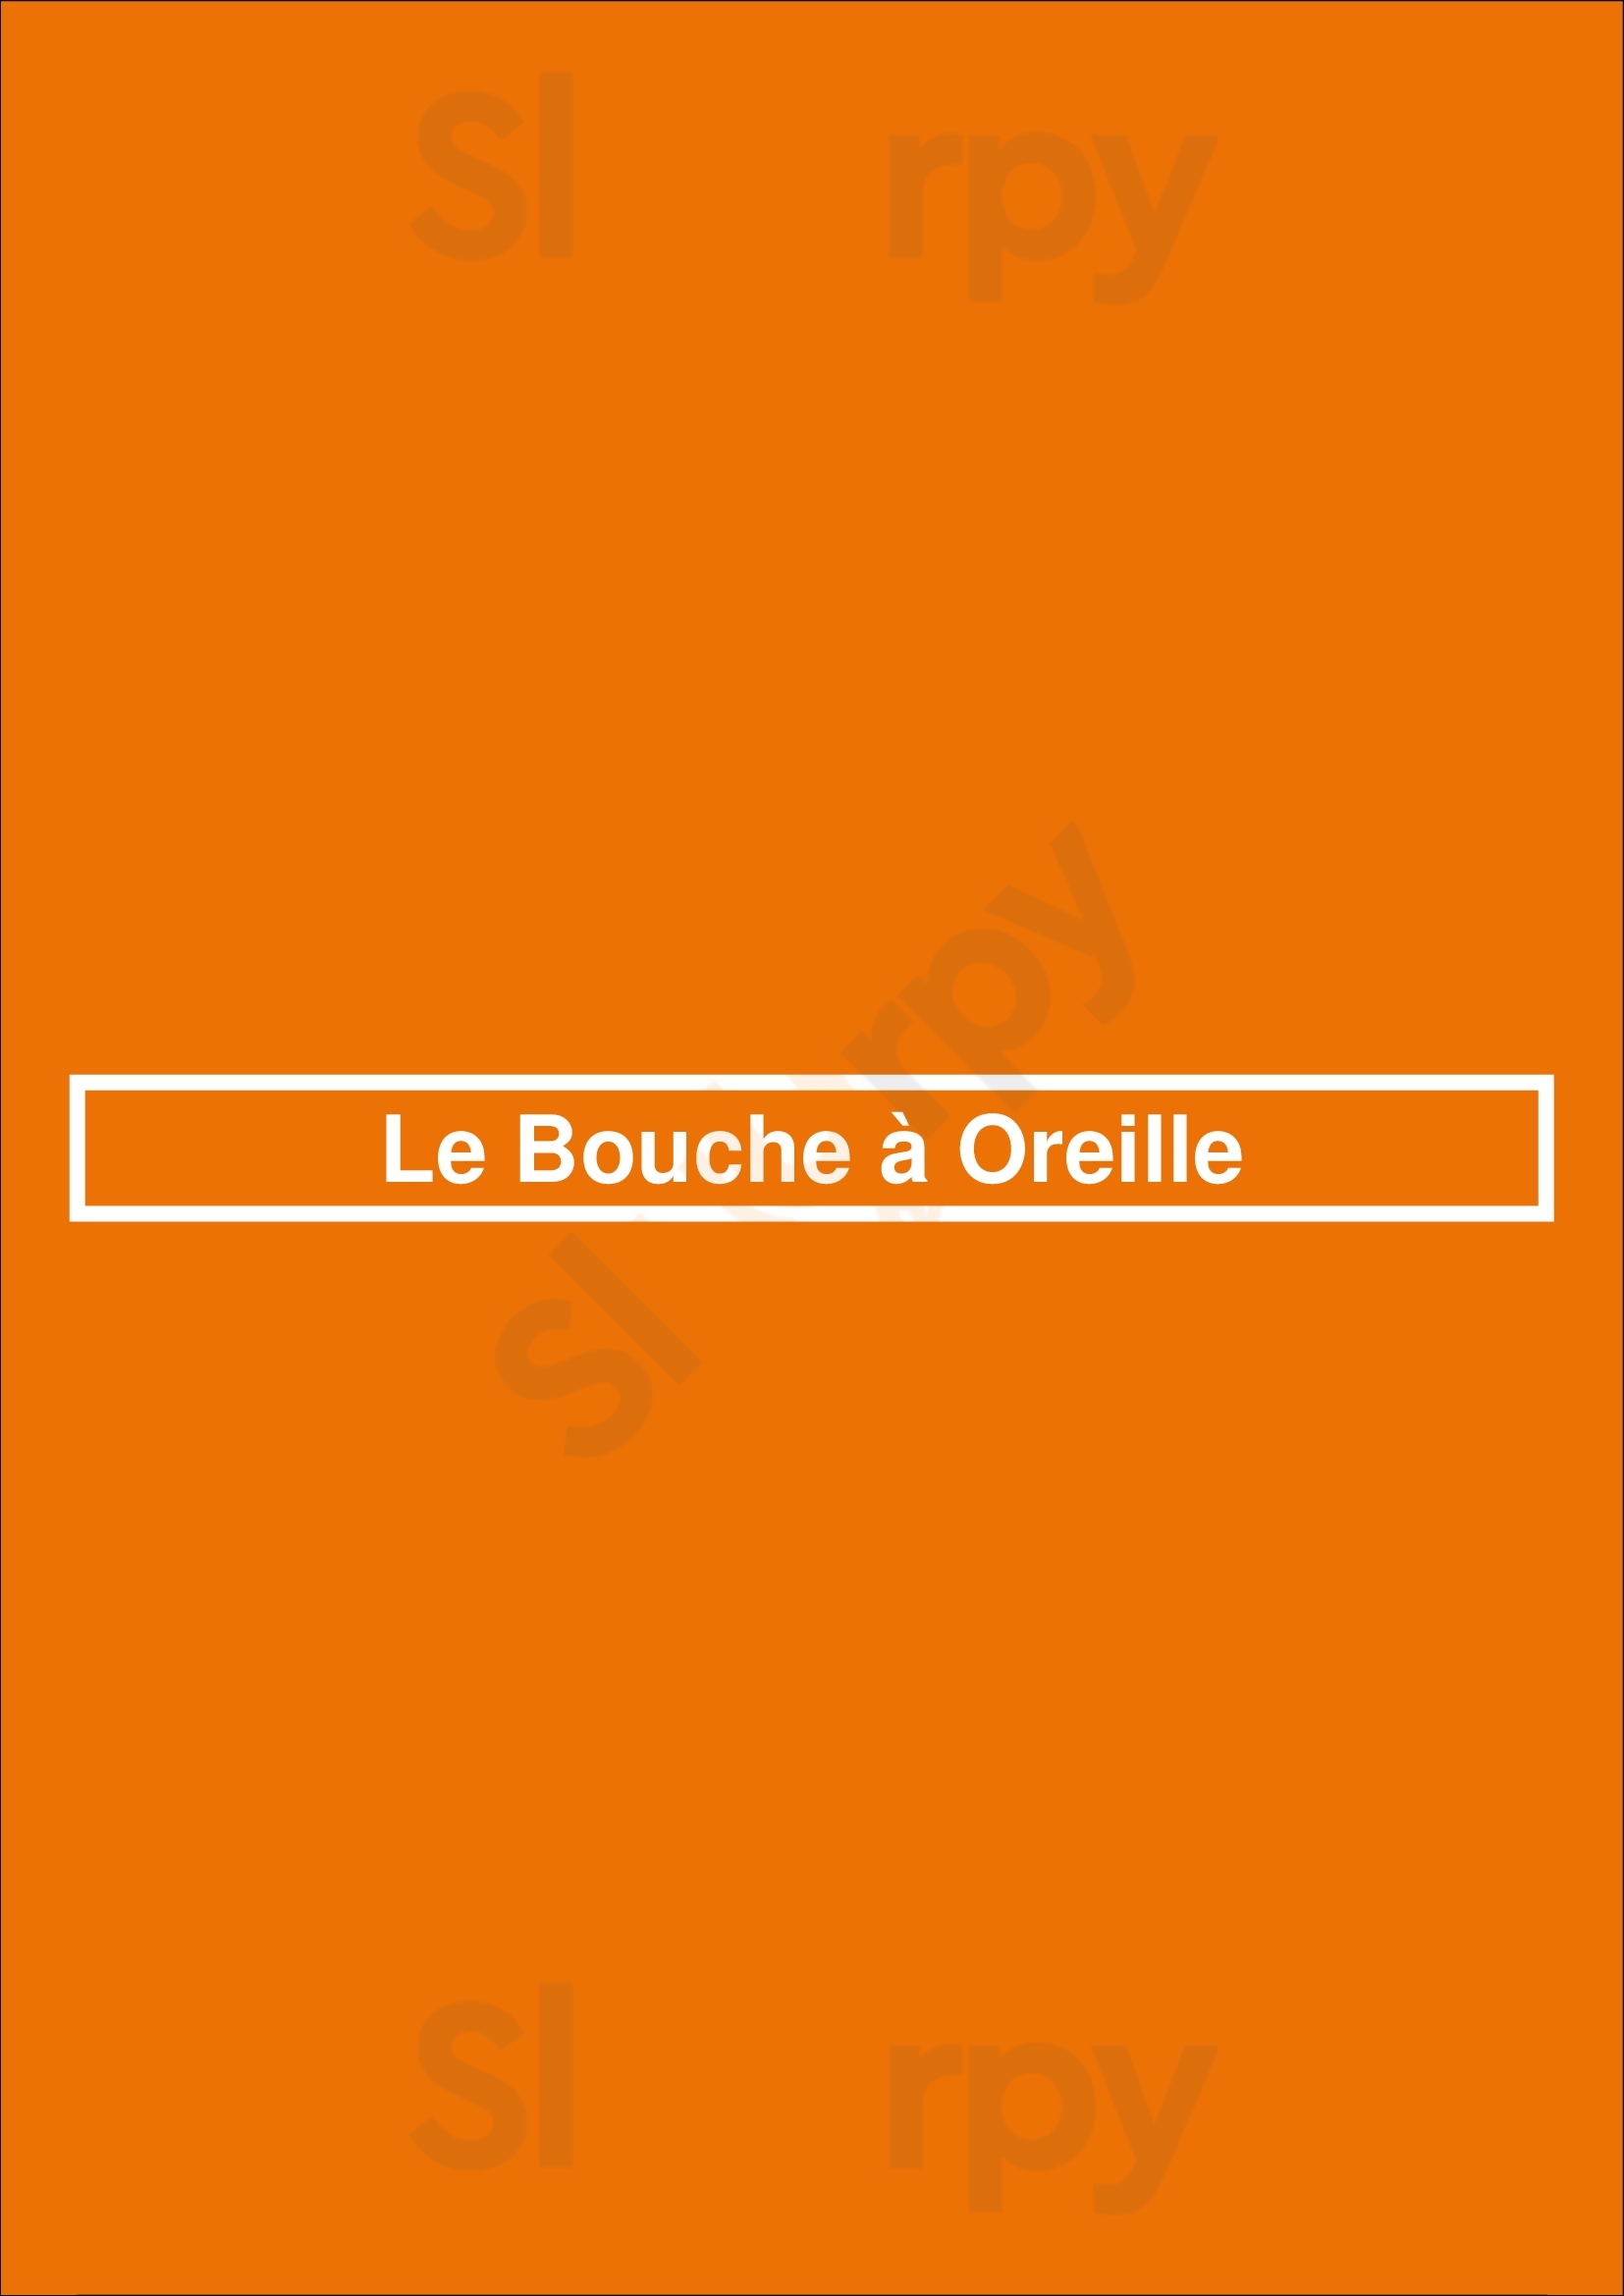 Le Bouche à Oreille Lyon Menu - 1